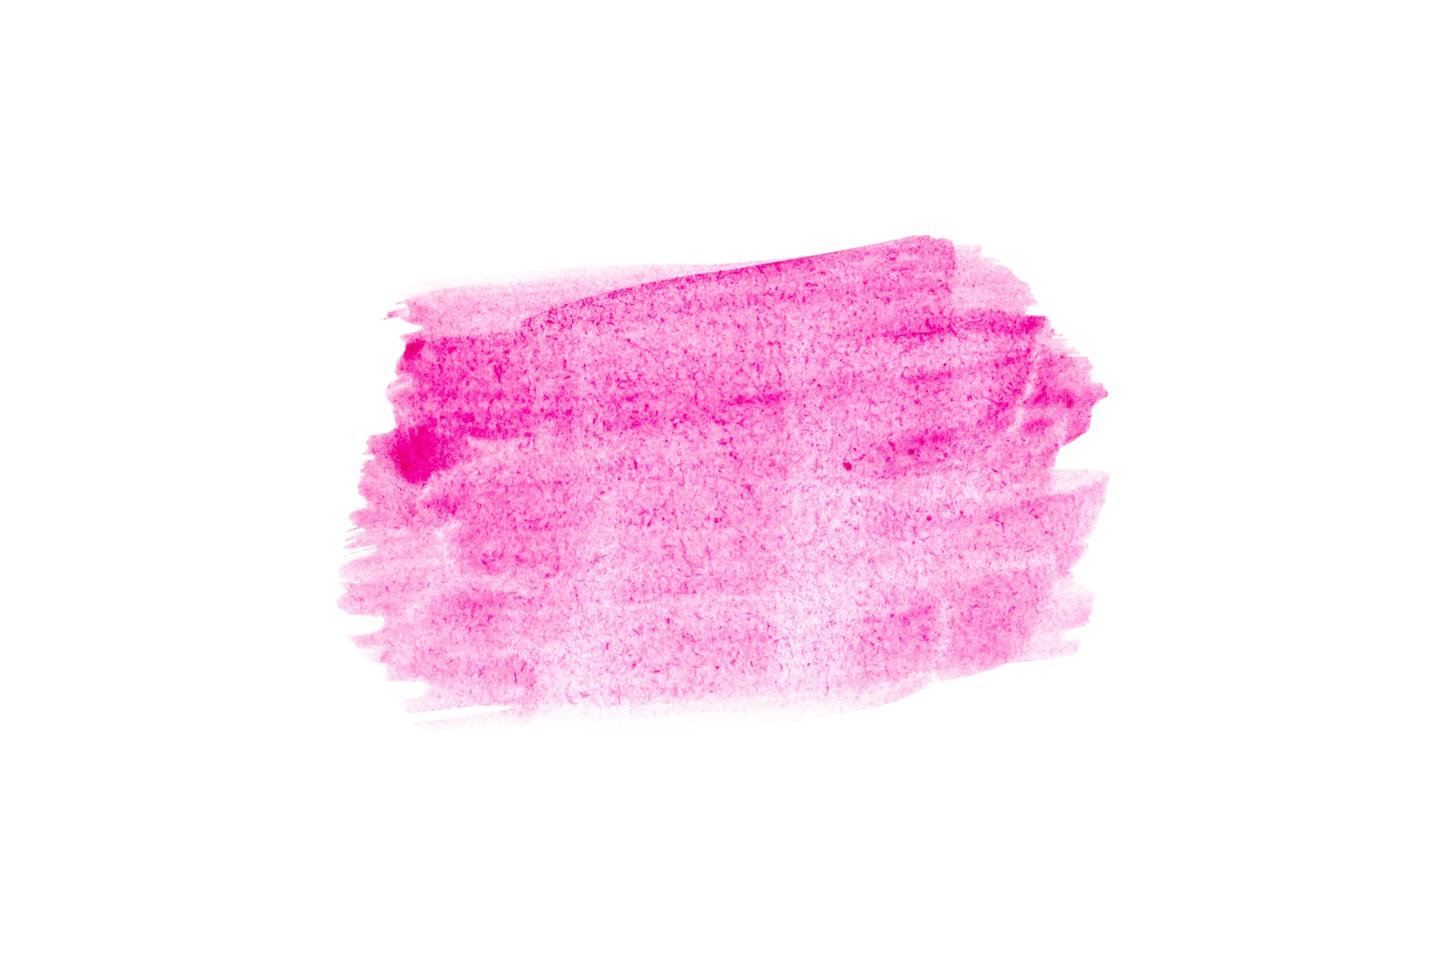 Frottis rose clair de peinture acrylique isolé sur fond blanc photo